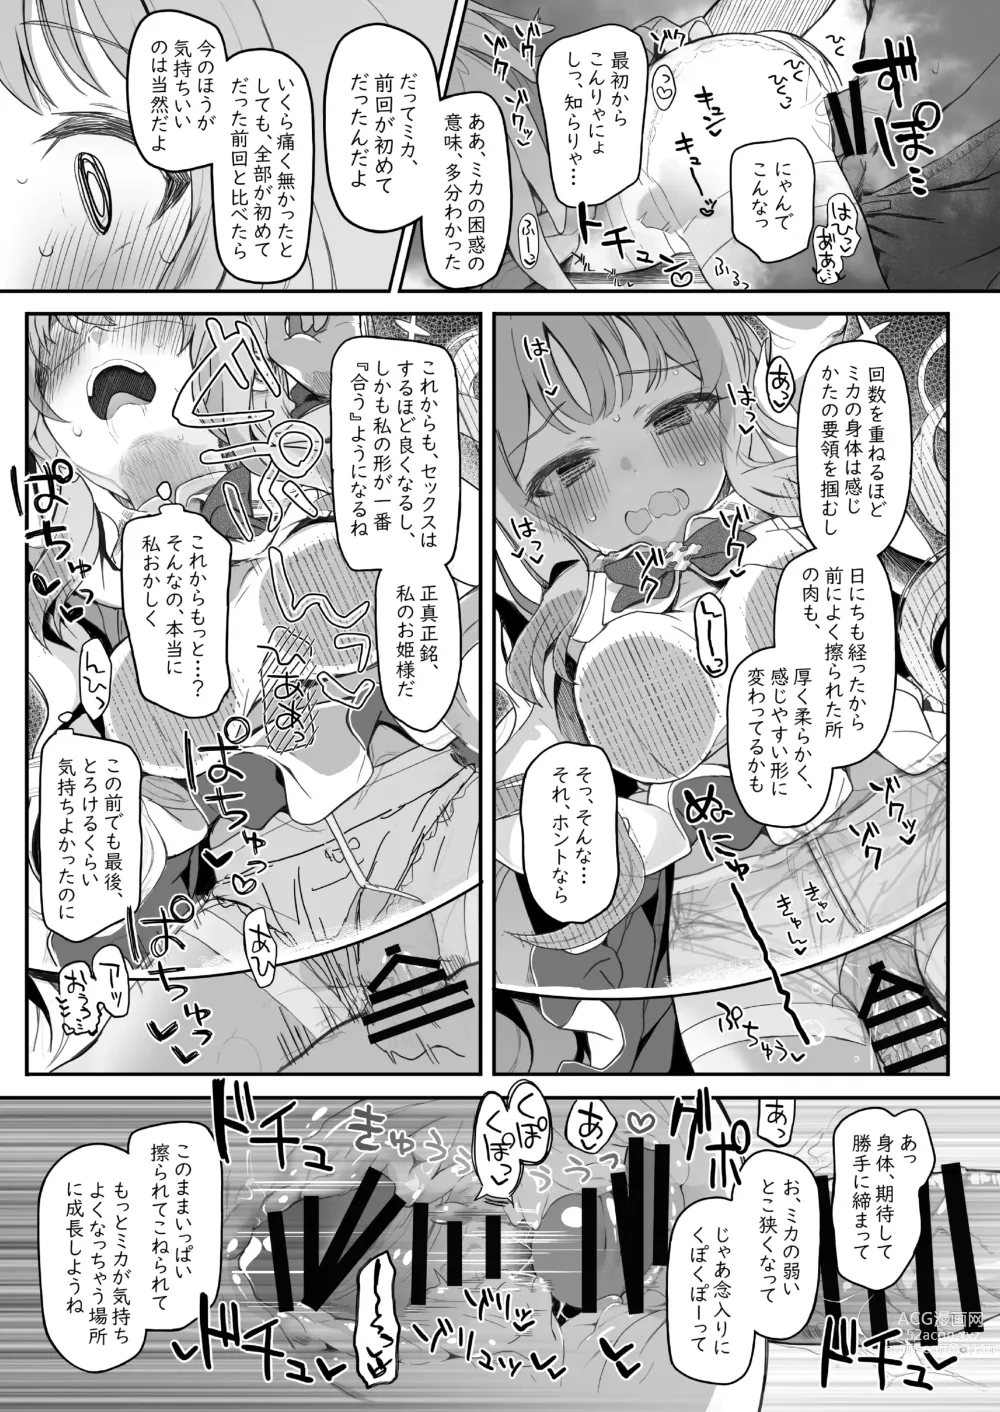 Page 53 of doujinshi Tenshi de Warui Ko DEAREST